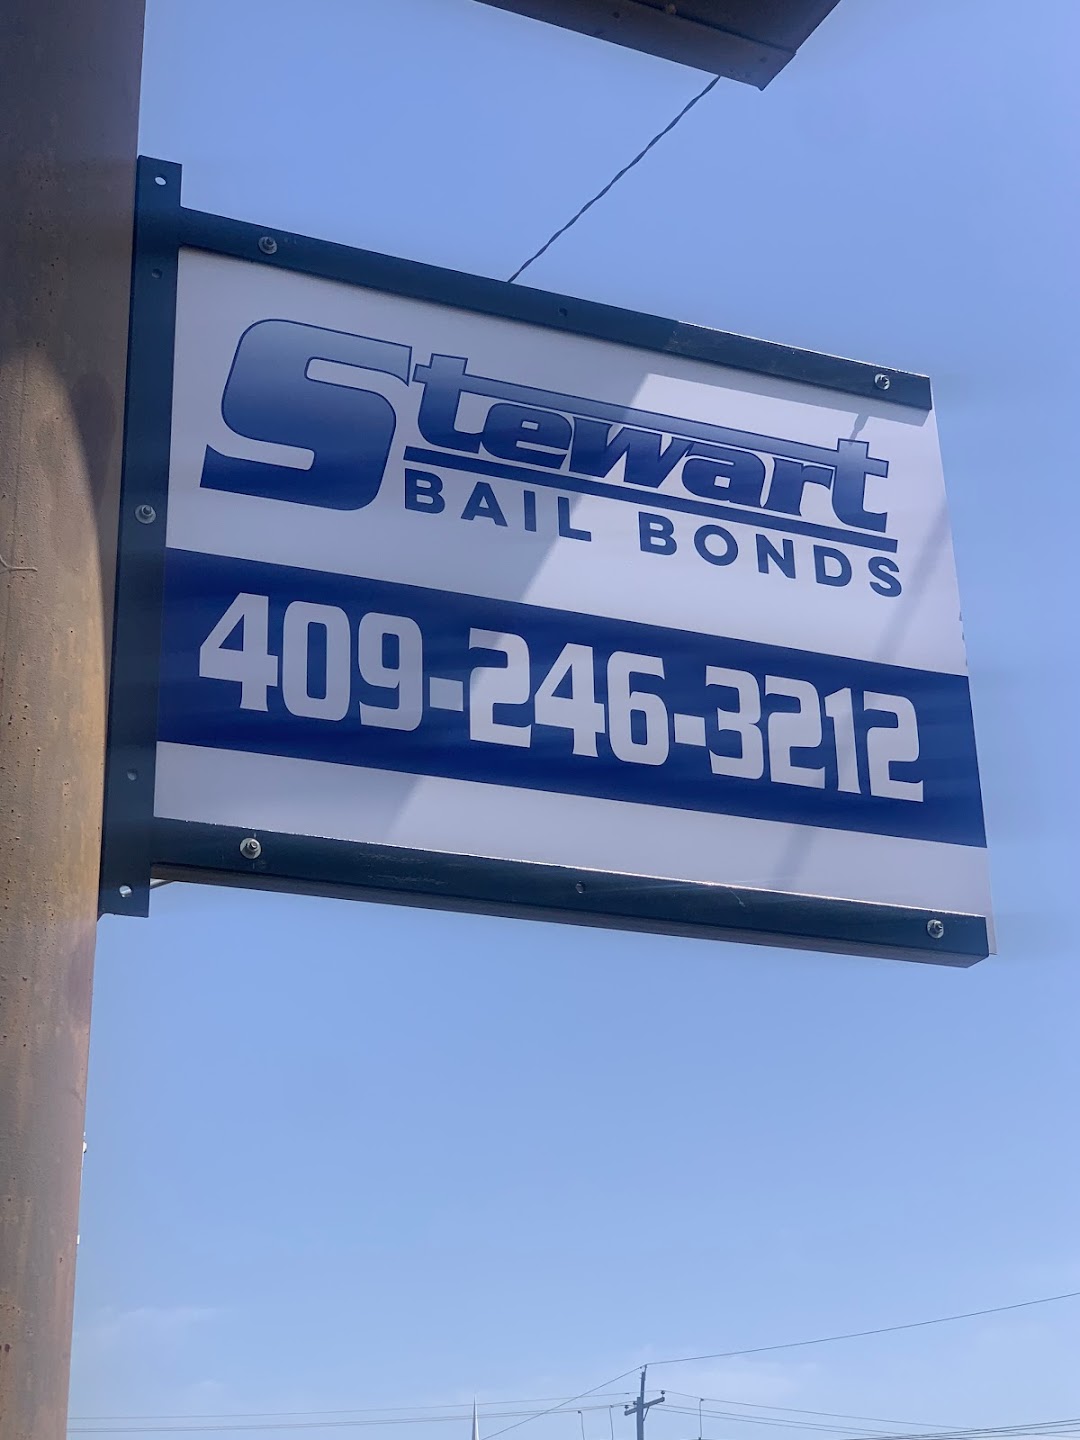 Stewart Bail Bonds